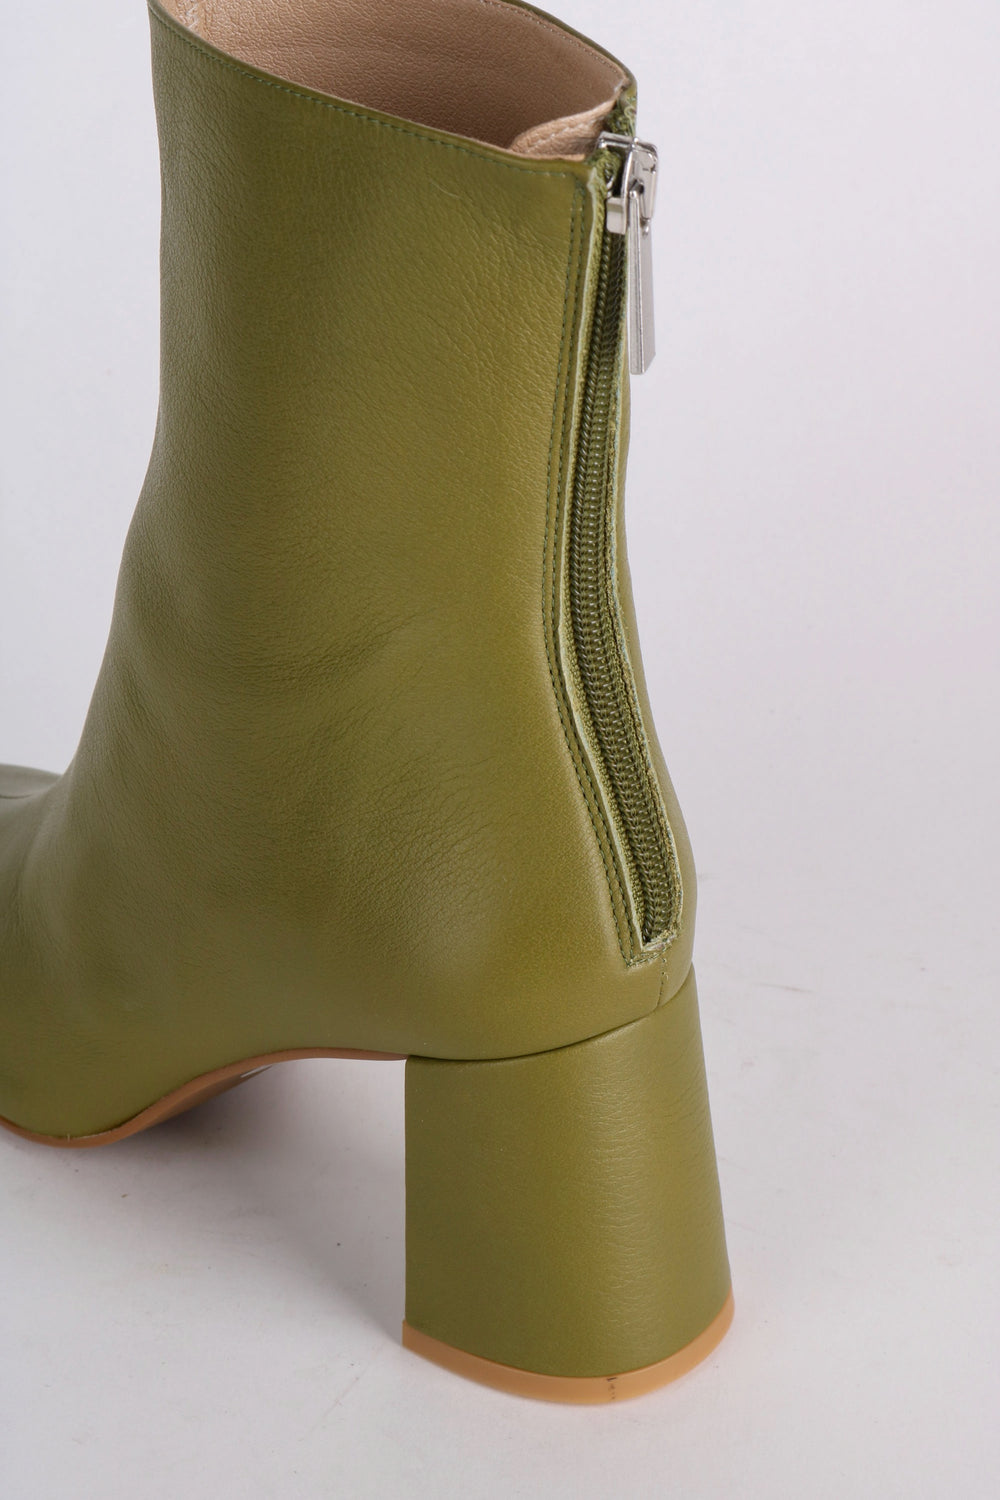 Olive Tabatha Boot